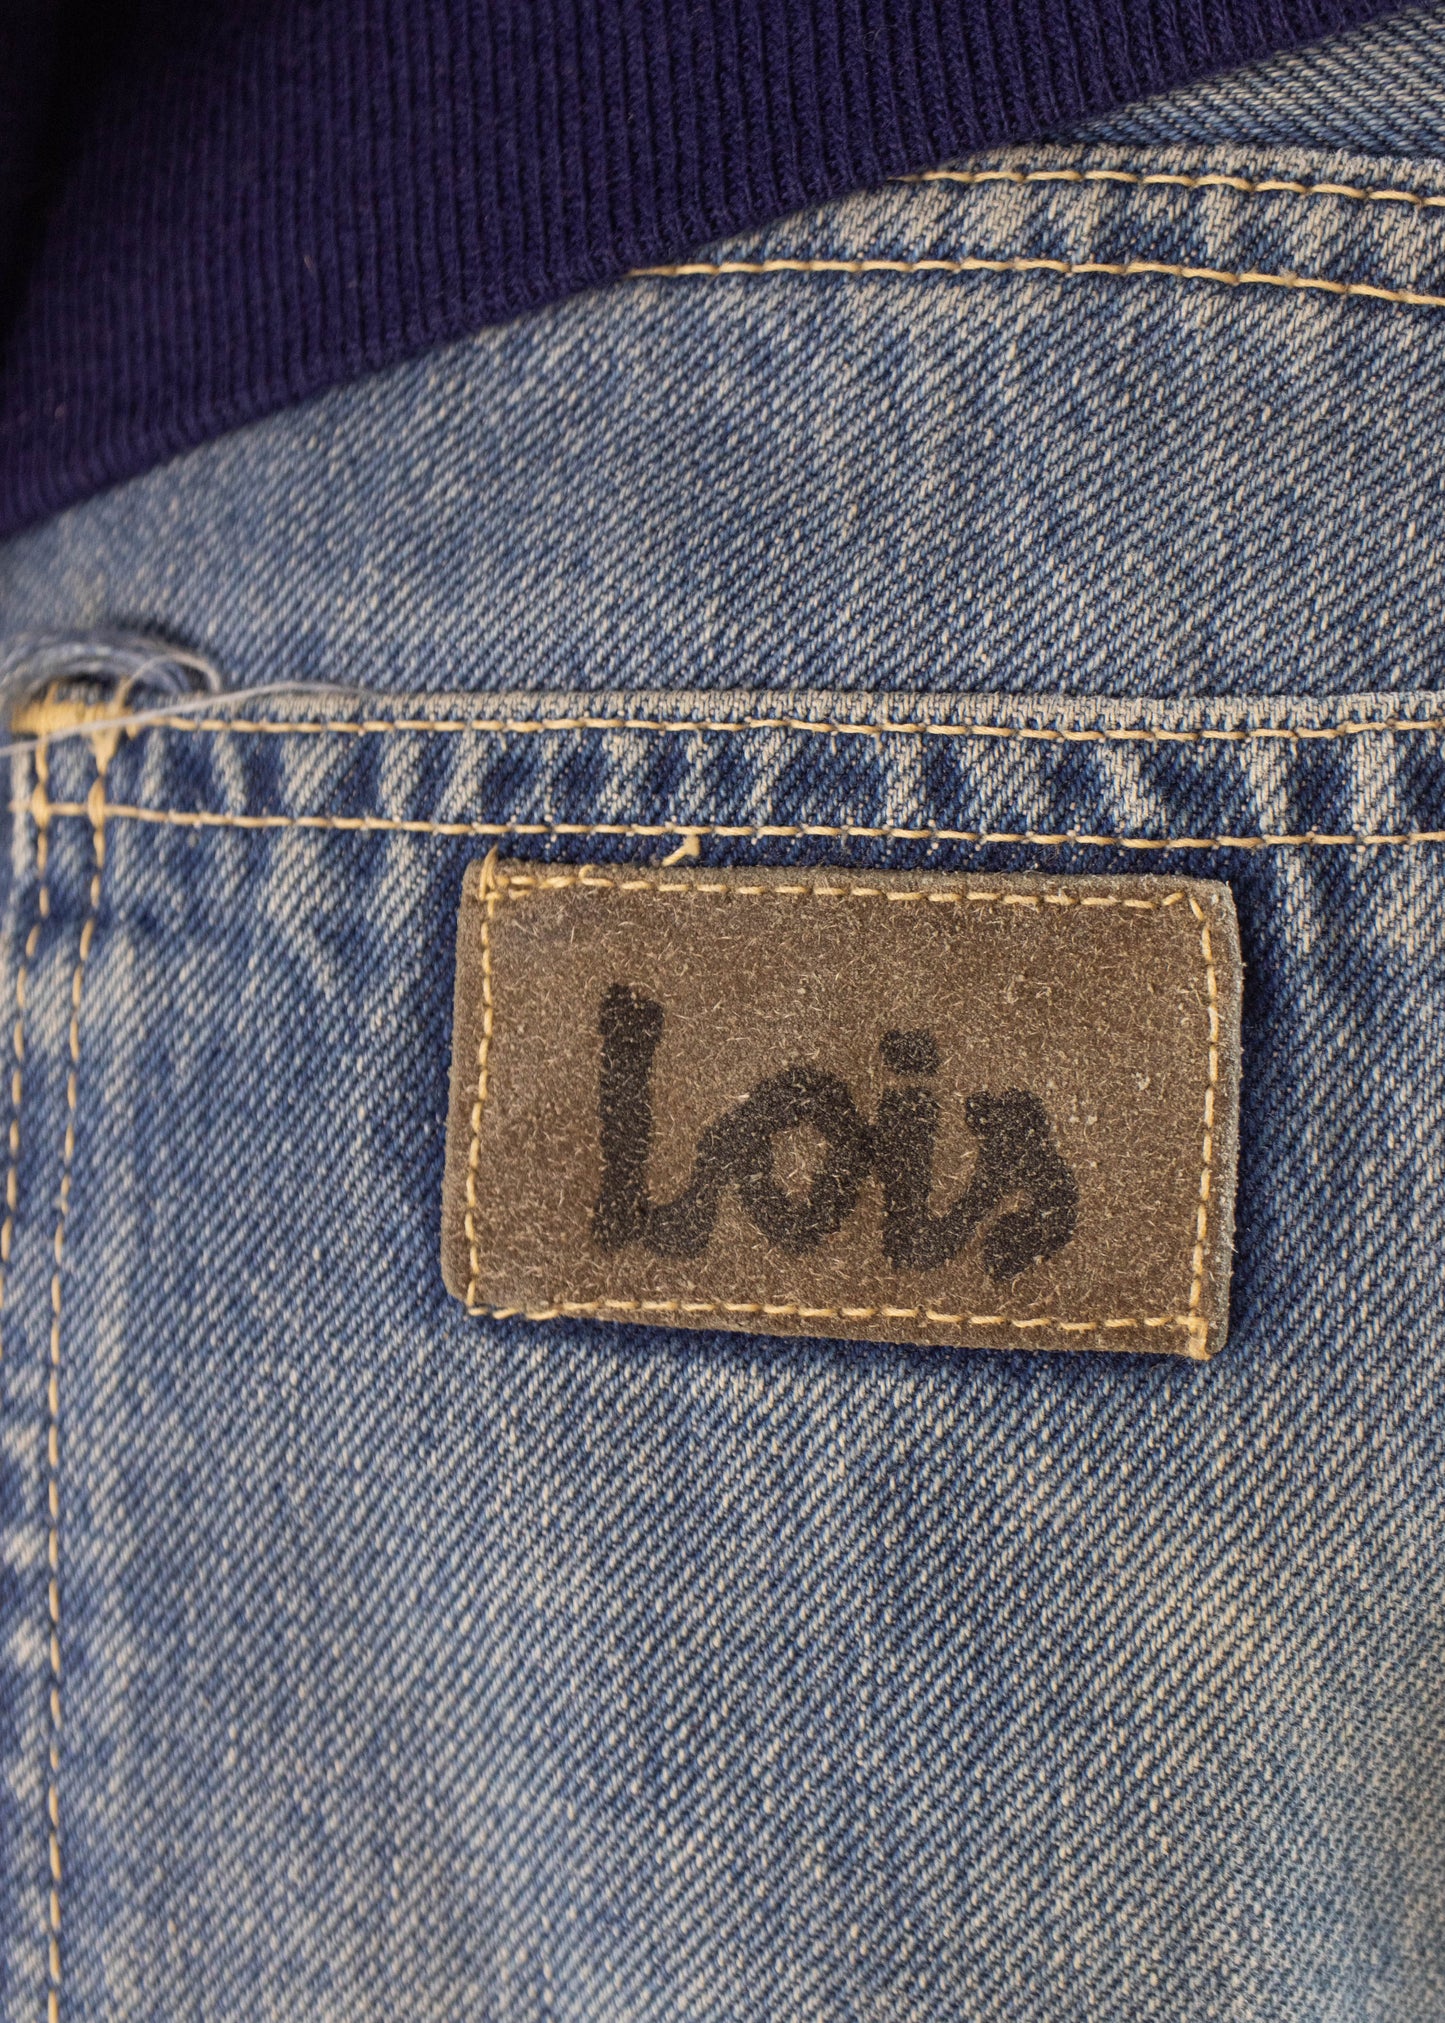 1990s Lois Midwash Flare Jeans Size Women's 32 Men's 34